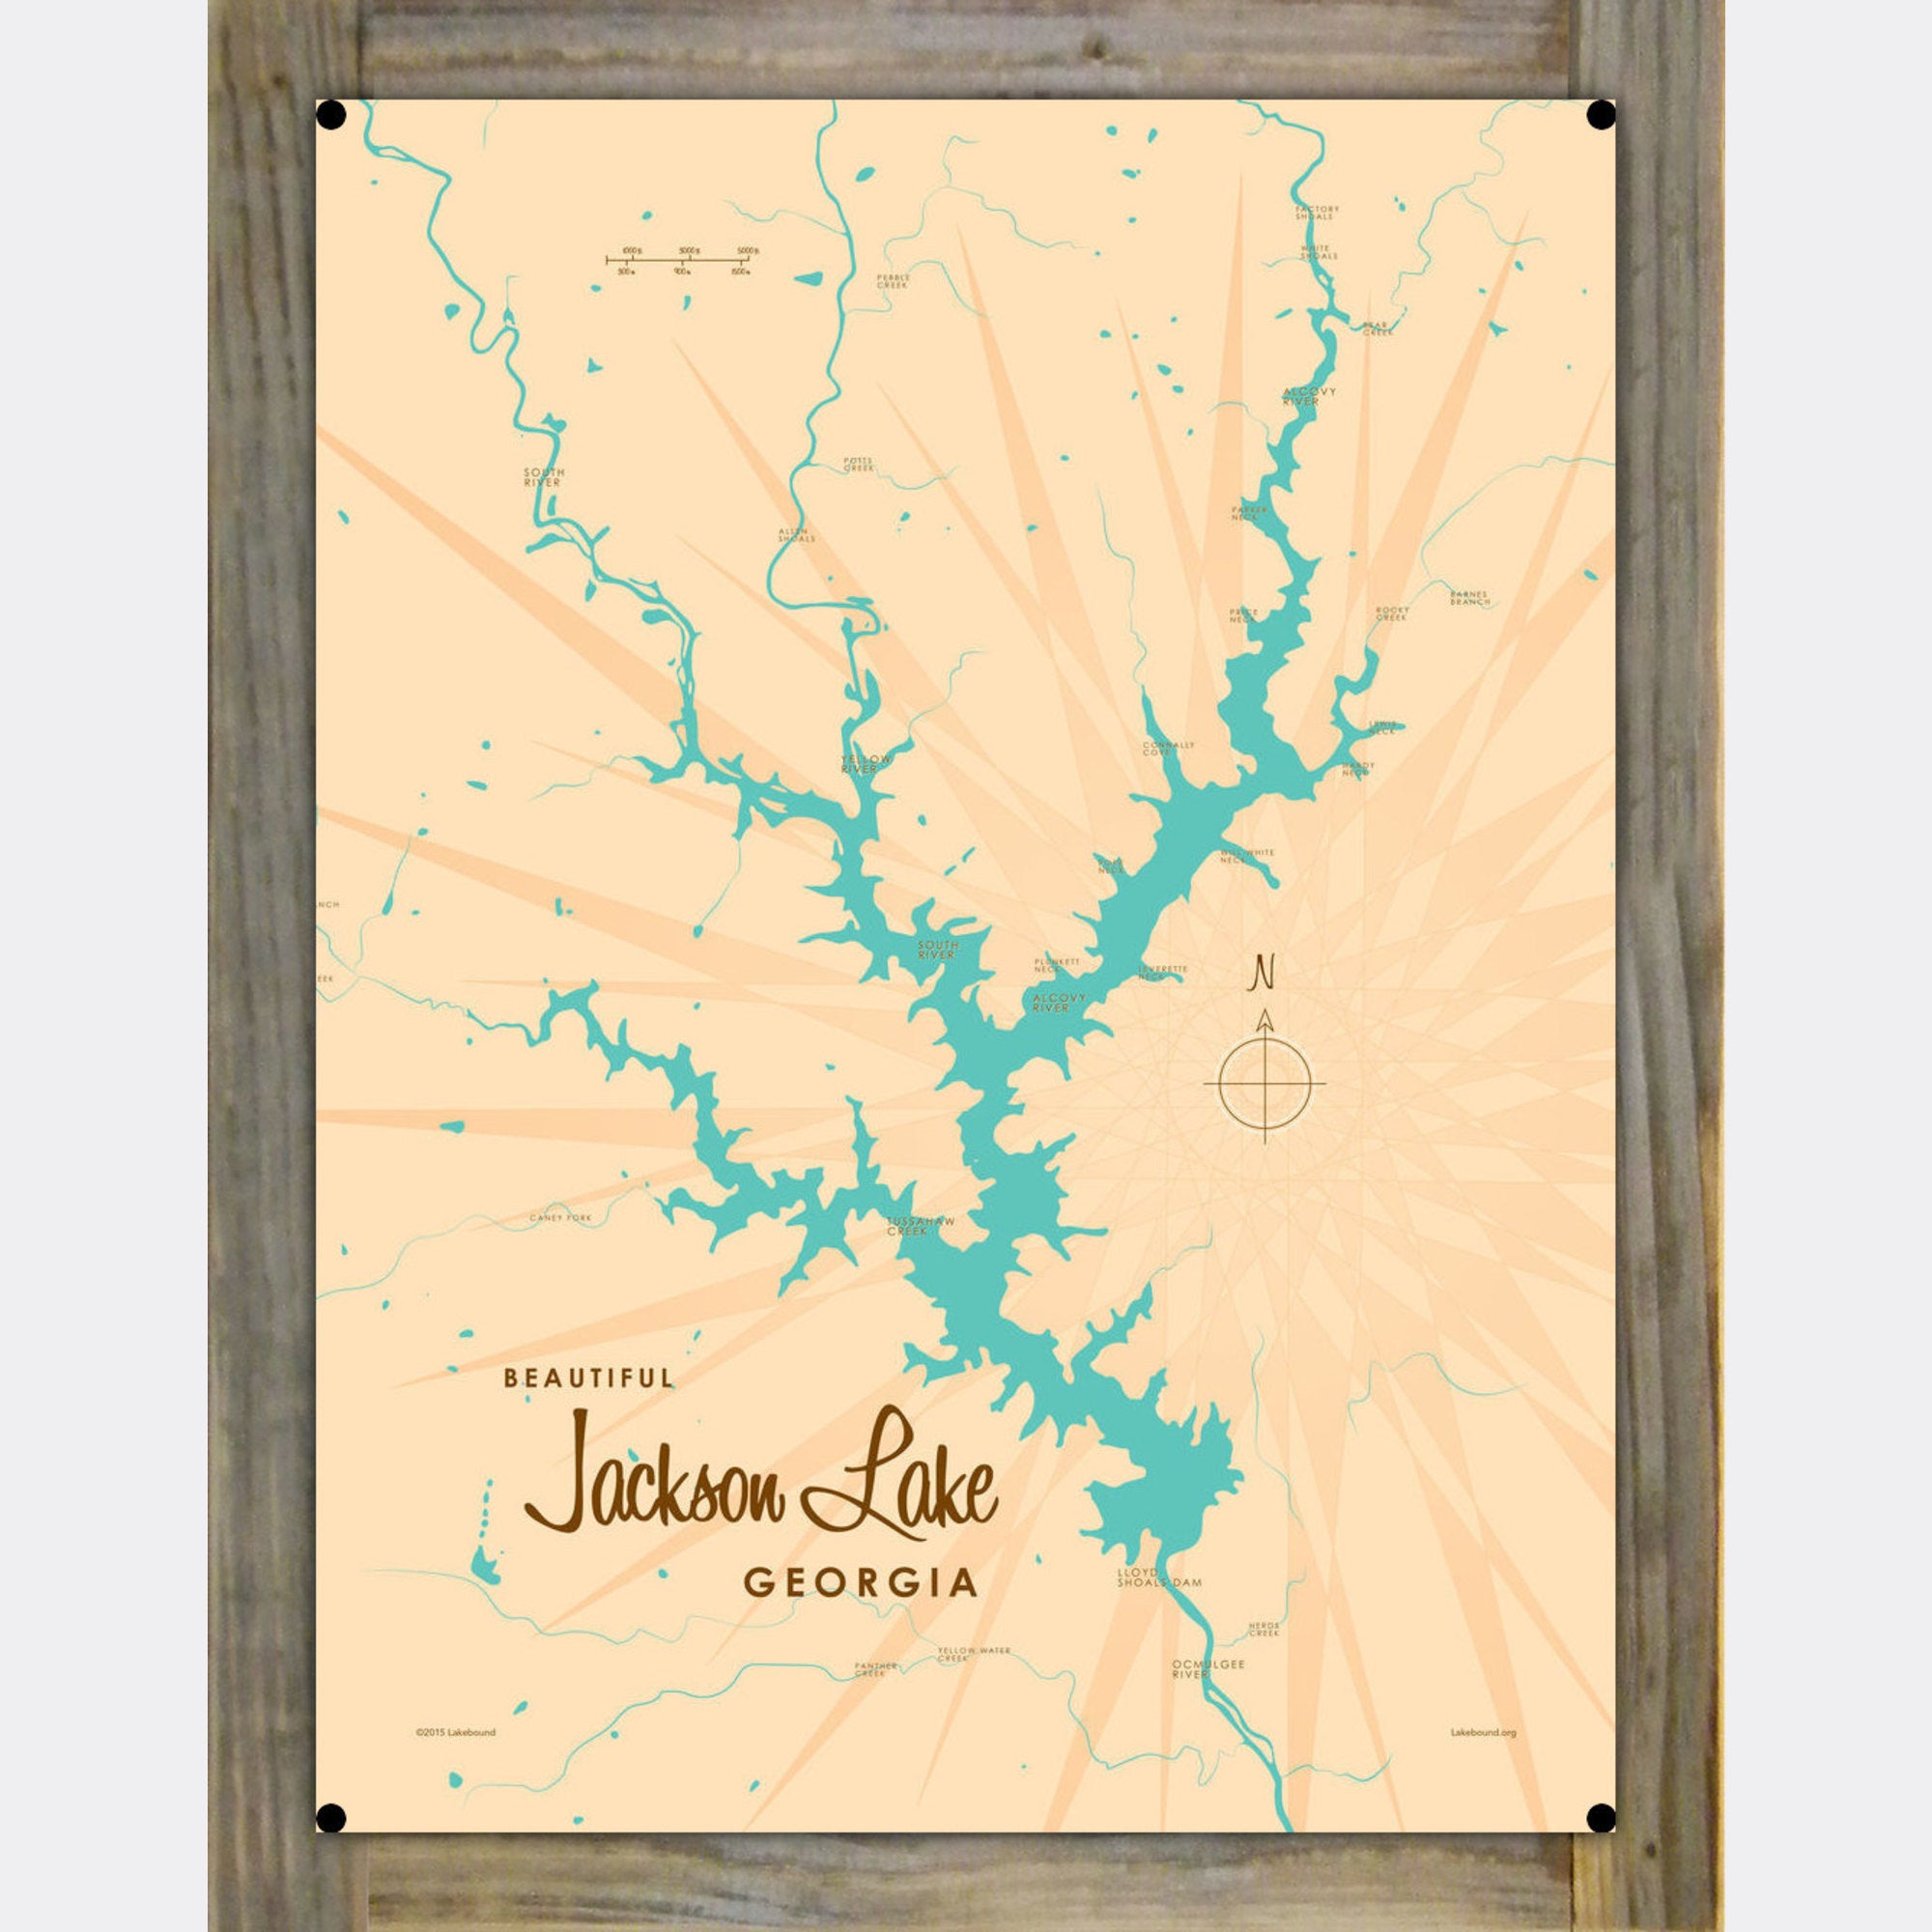 Jackson Lake Georgia, Wood-Mounted Metal Sign Map Art